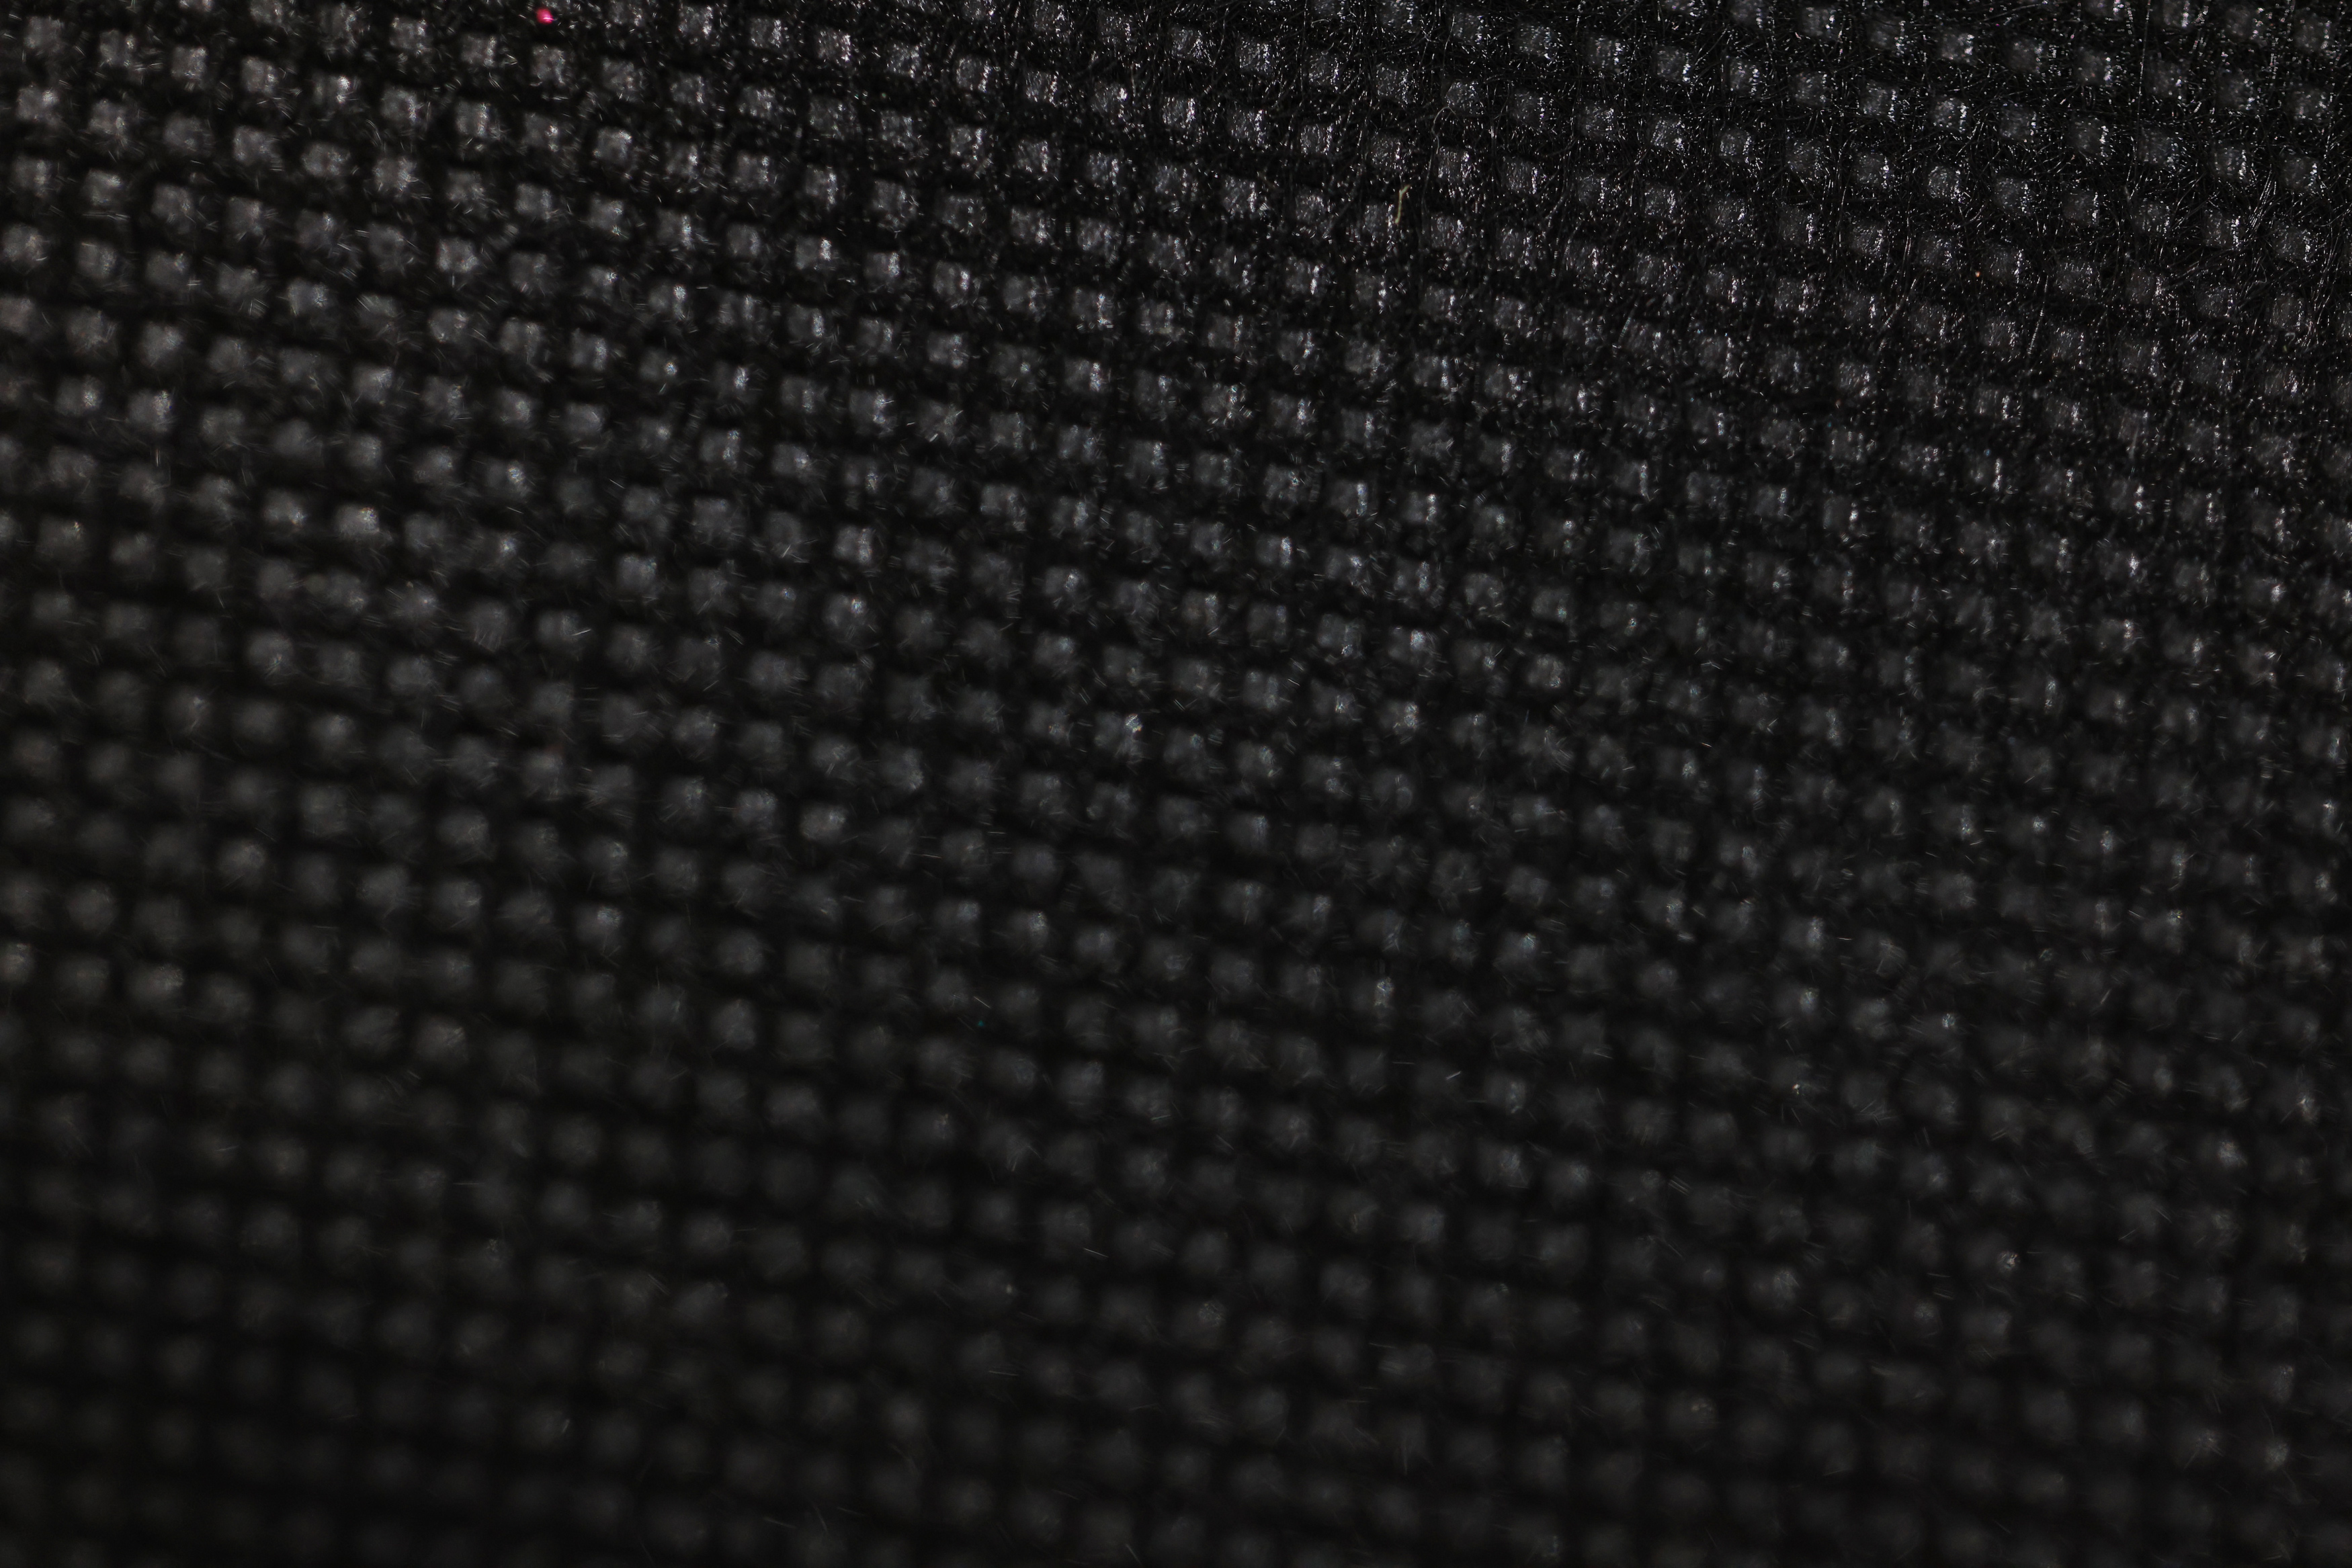 Black Background Sweater E8 Lattice 3500x2334